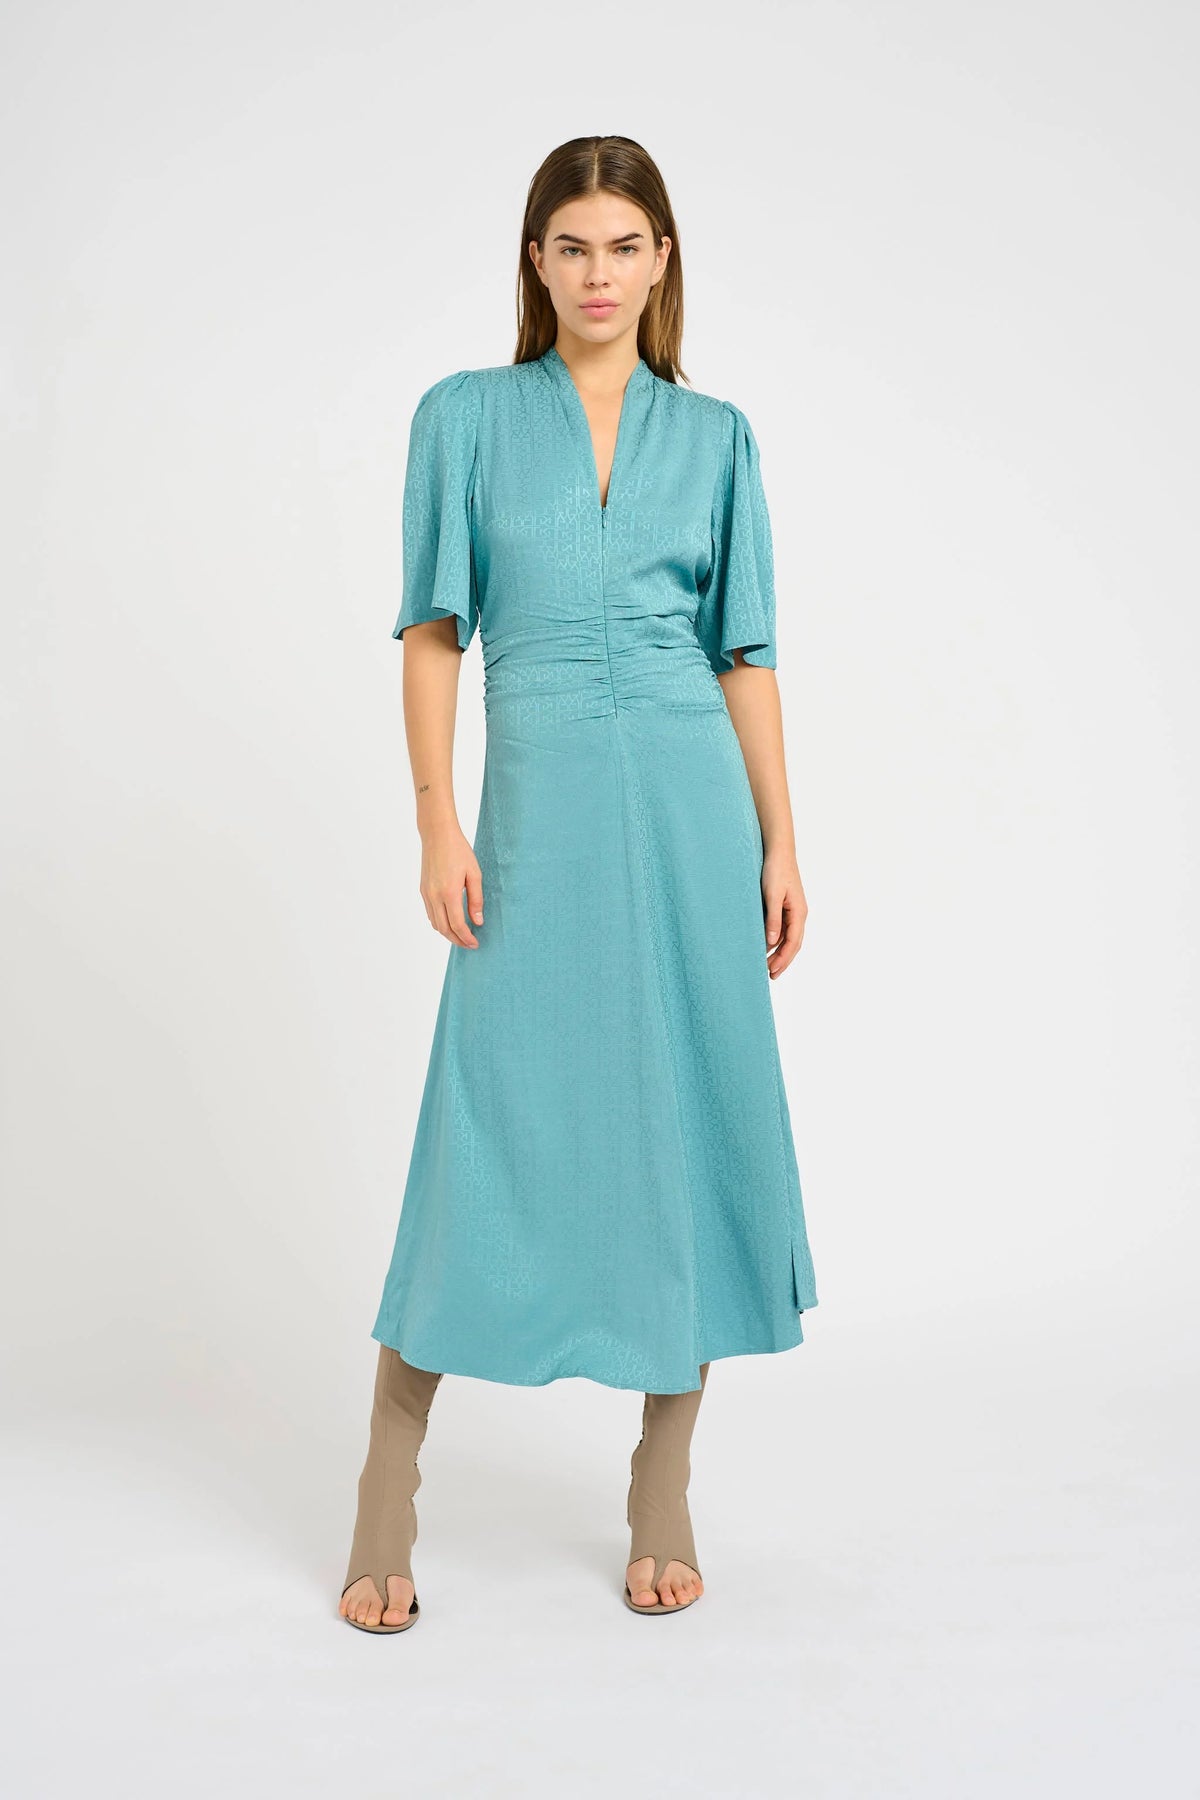 BrinaGZ Midi Ss Dress - Brittany Blue